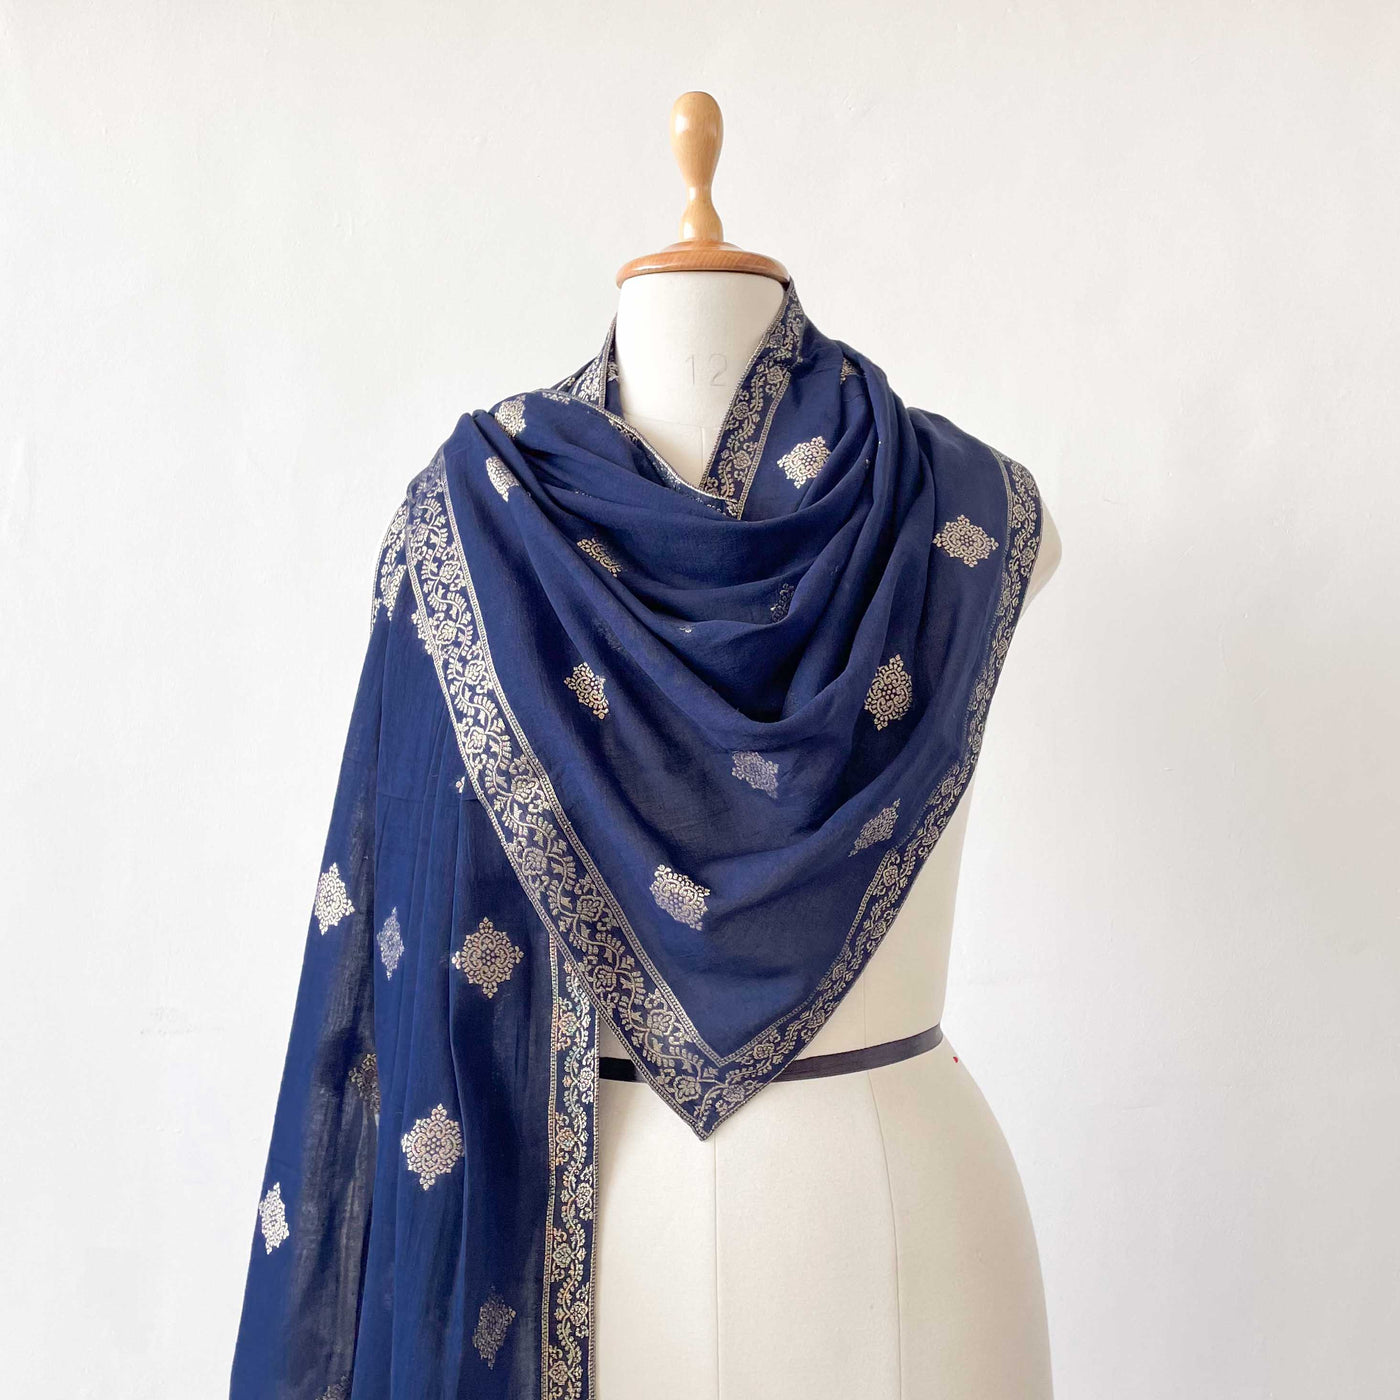 Mix Dupatta Dupatta Deep Blue & Gold Shahi Floral Butta Woven Pure Mul Cotton Dupatta (Width 36 Inches)